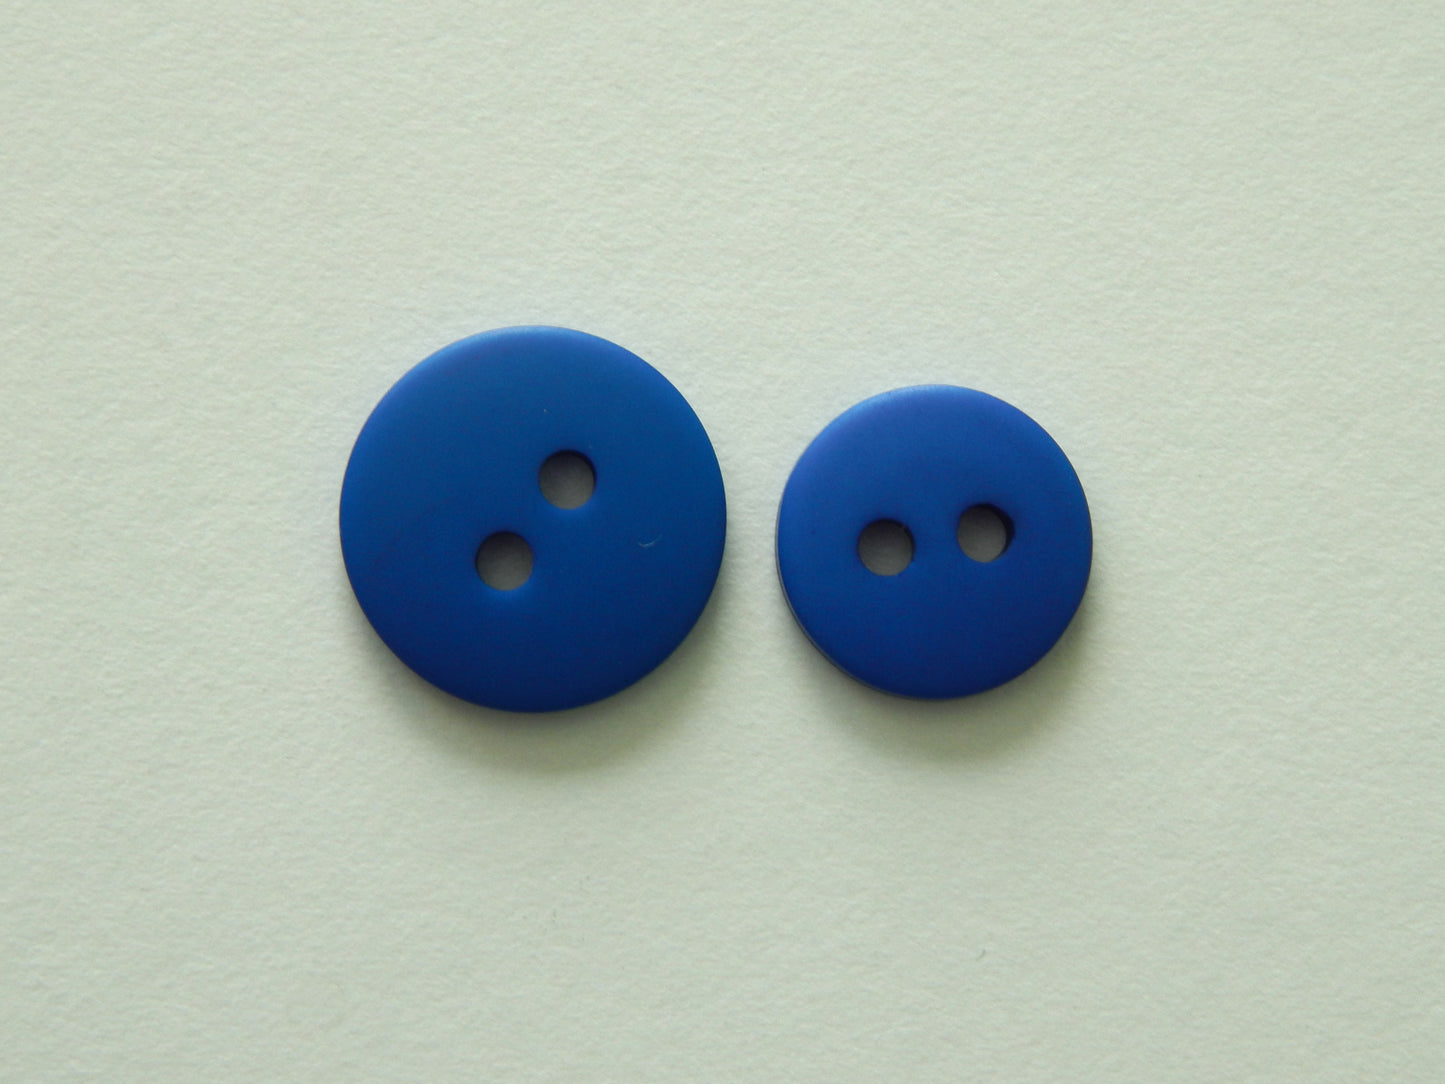 blue plastic buttons